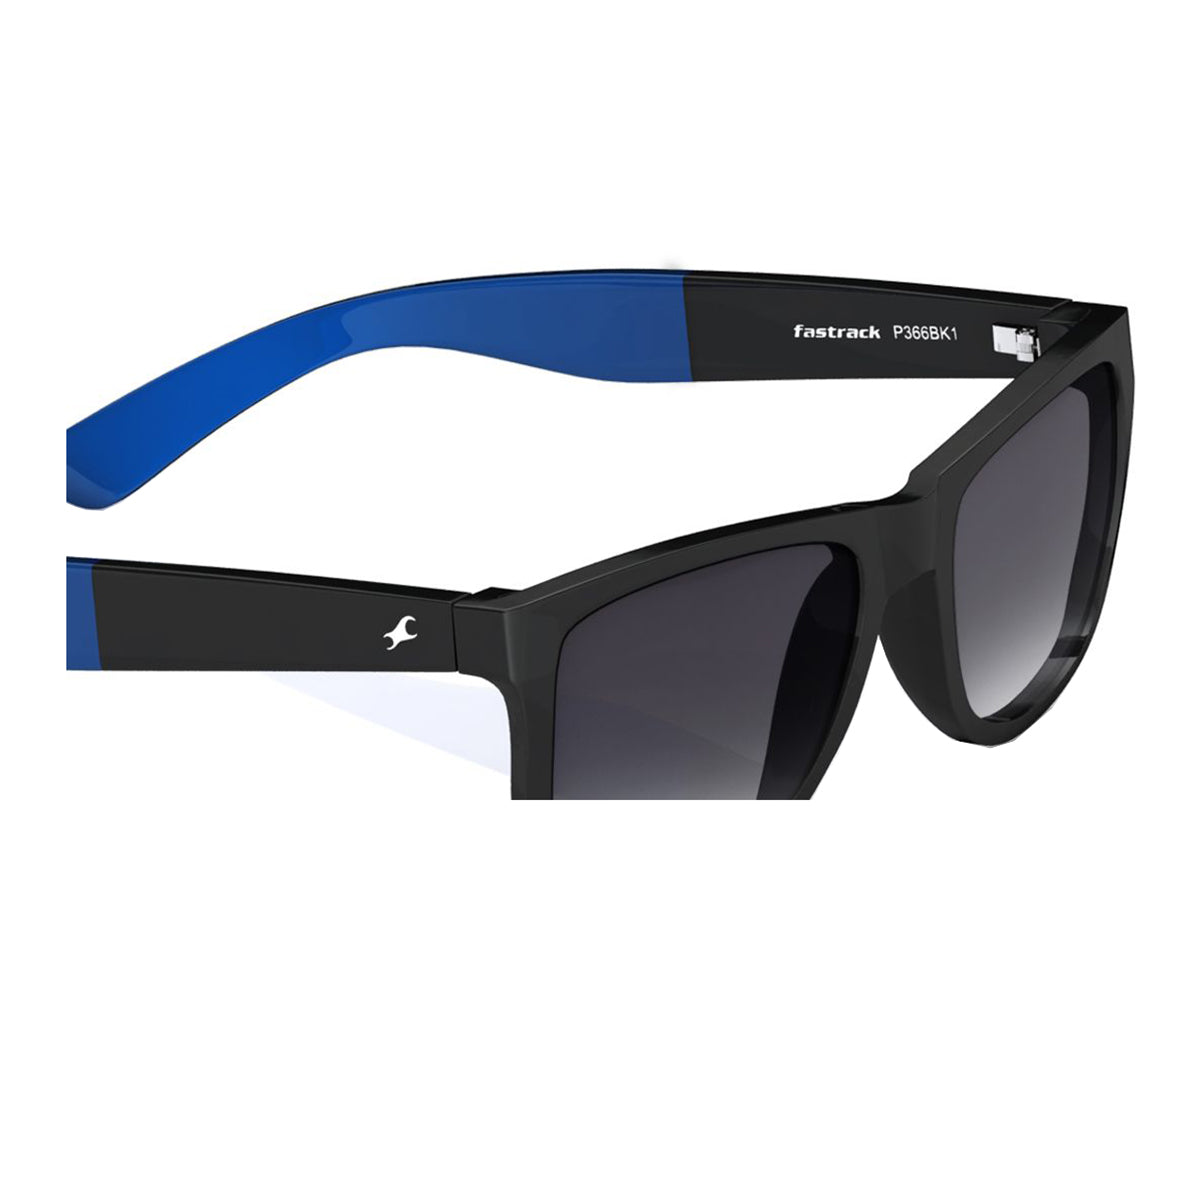 Buy Online Black Wayfarer Rimmed Sunglasses From Fastrack - C096Bk2 | Fastrack  Eyewear